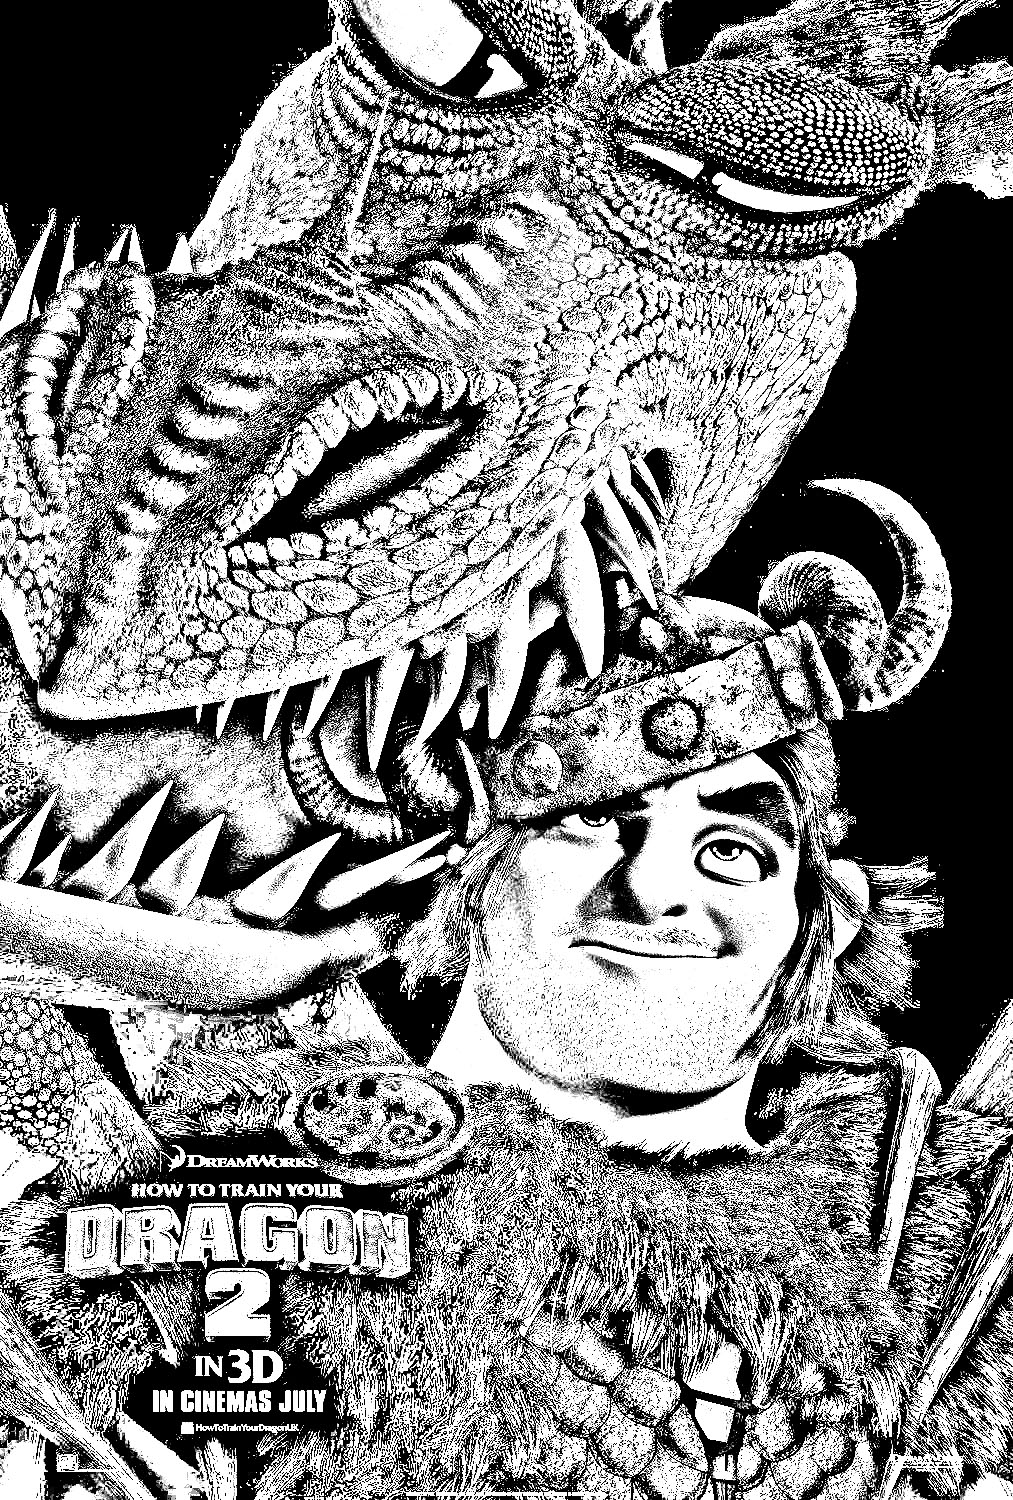 Cartel de la película Dragon 2 con uno de los personajes y su amigo alado